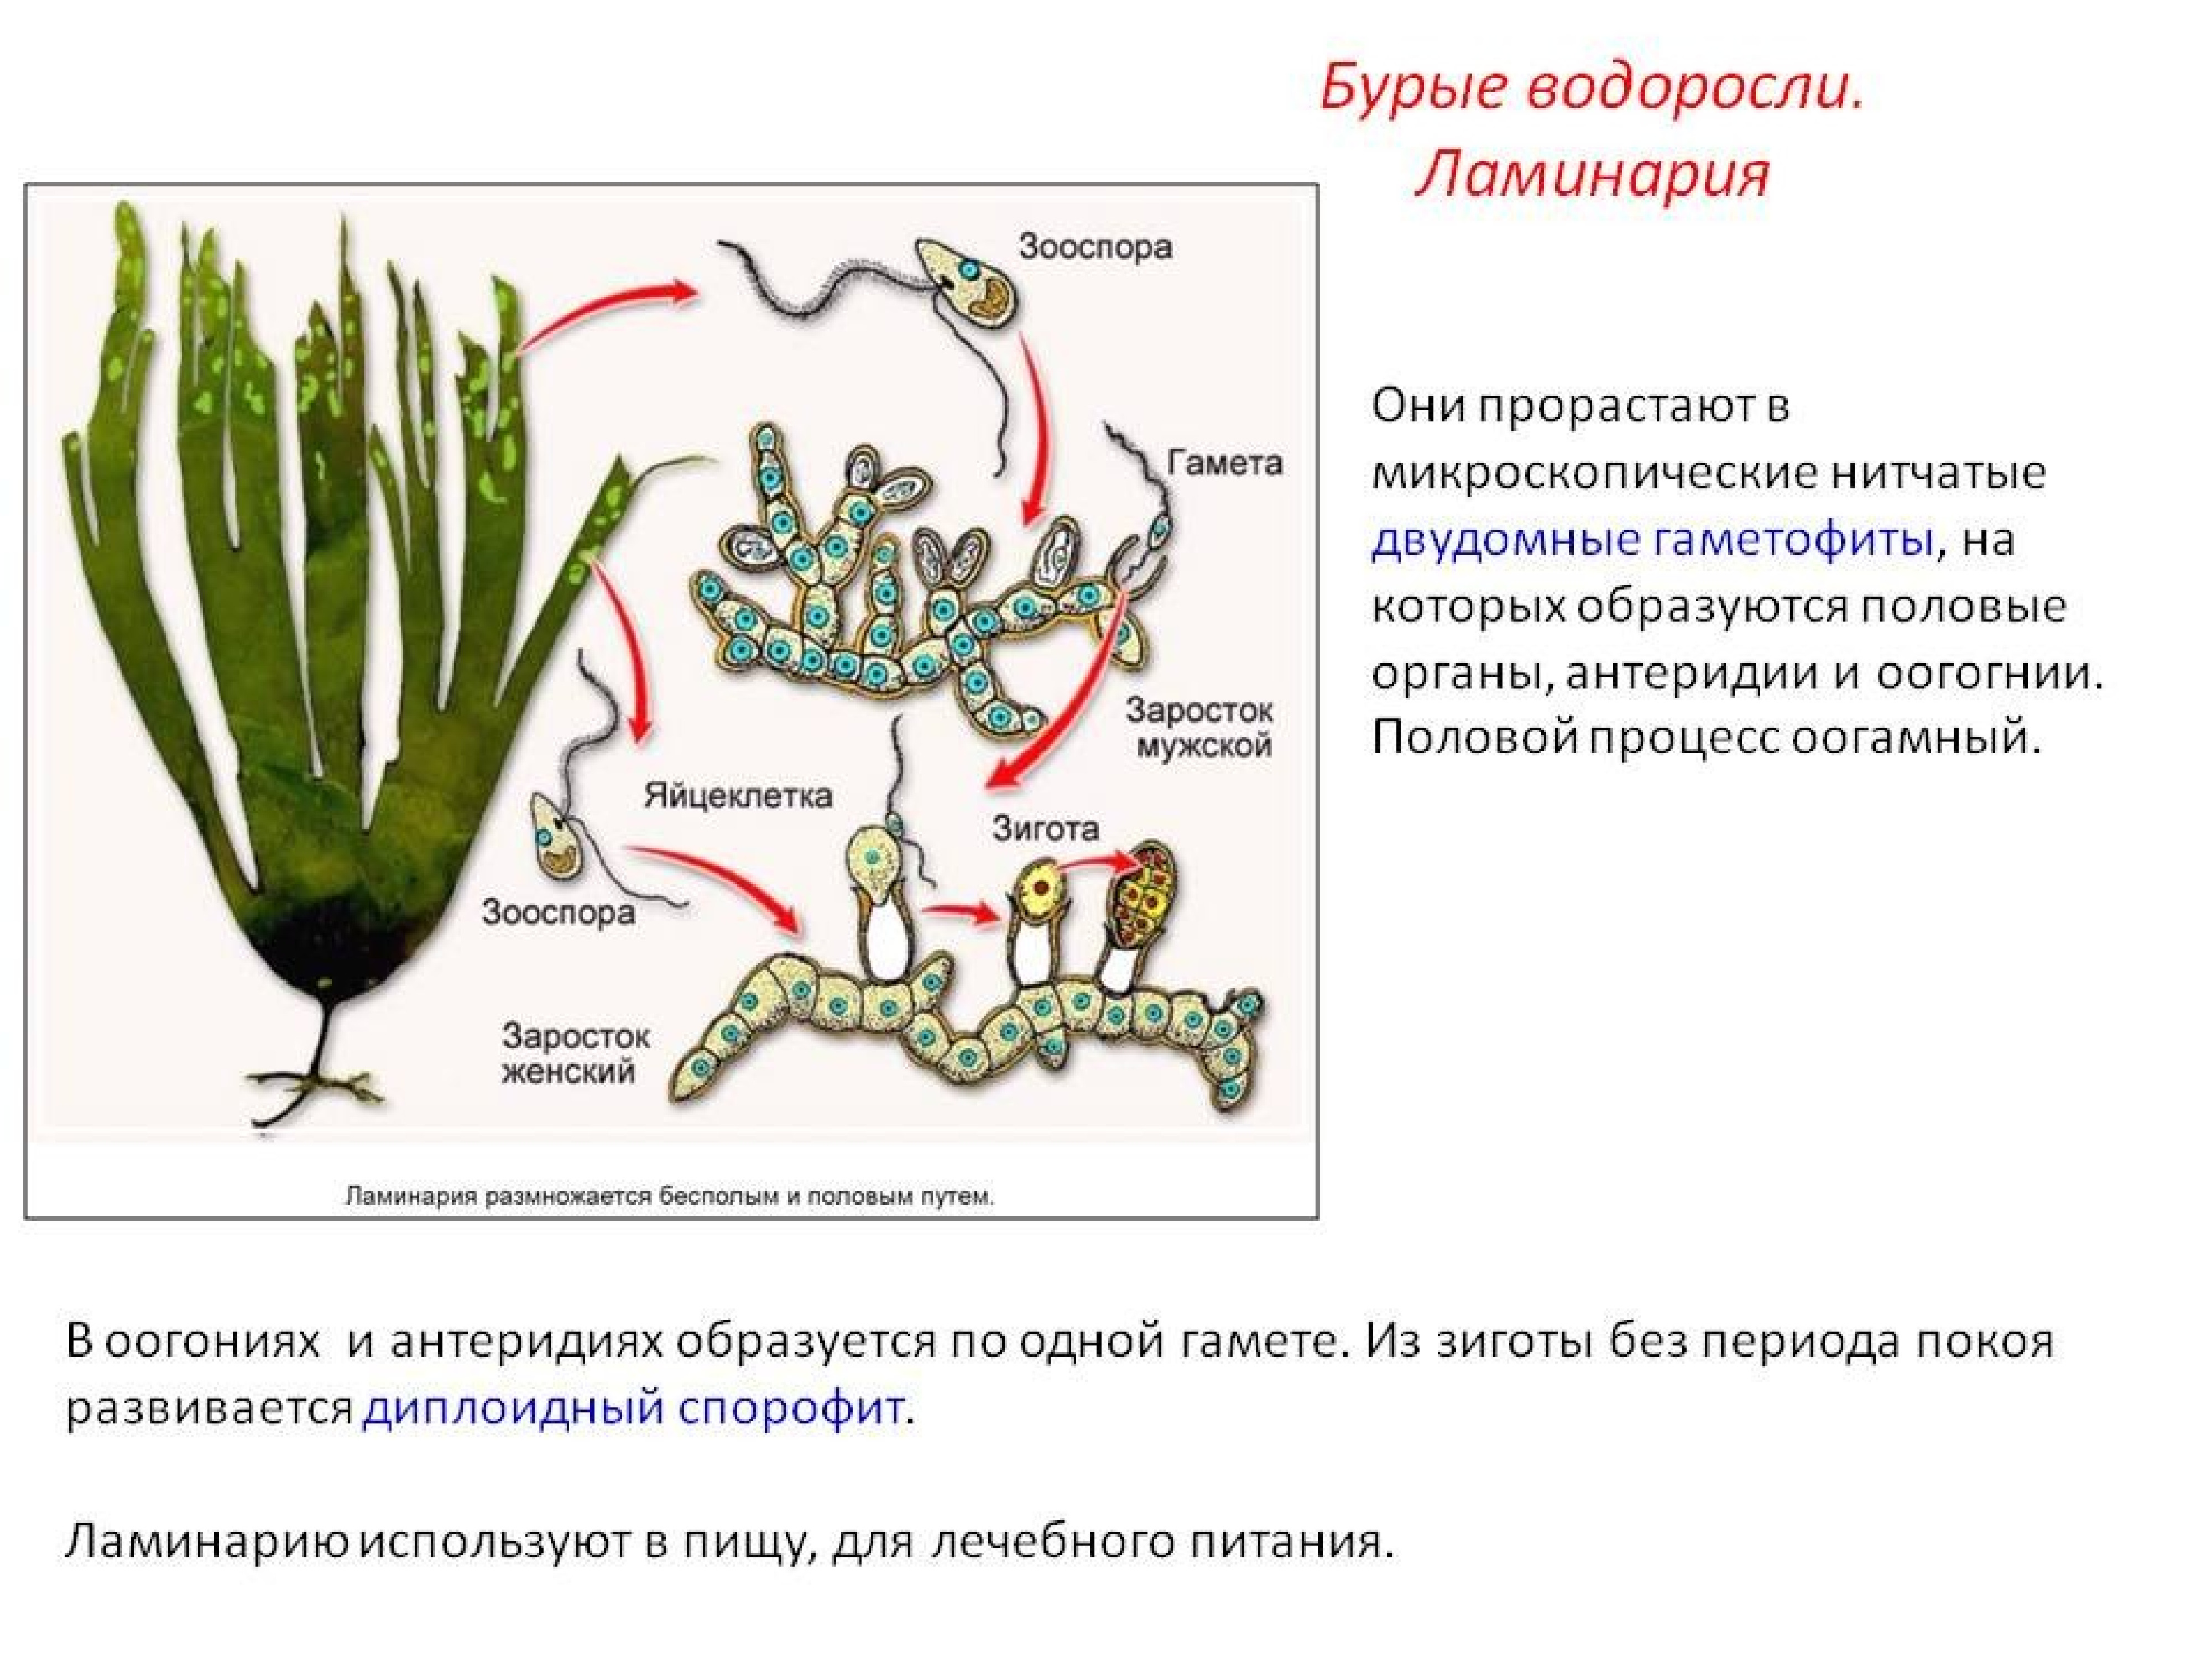 Чем представлен гаметофит у водорослей. Цикл размножения бурых водорослей. Размножение бурых водорослей жизненный цикл. Процесс размножения бурых водорослей. Цикл развития бурых водорослей схема.